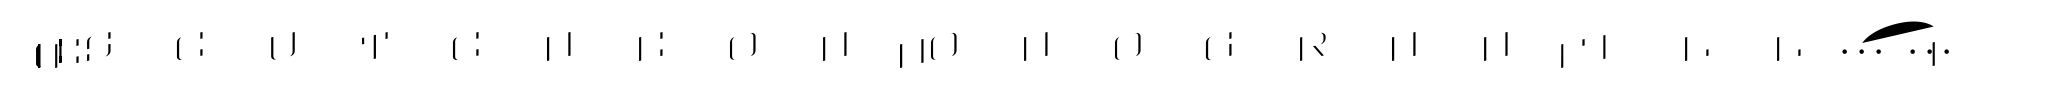 MFC Escutcheon Monogram Fill (250 Impressions) image